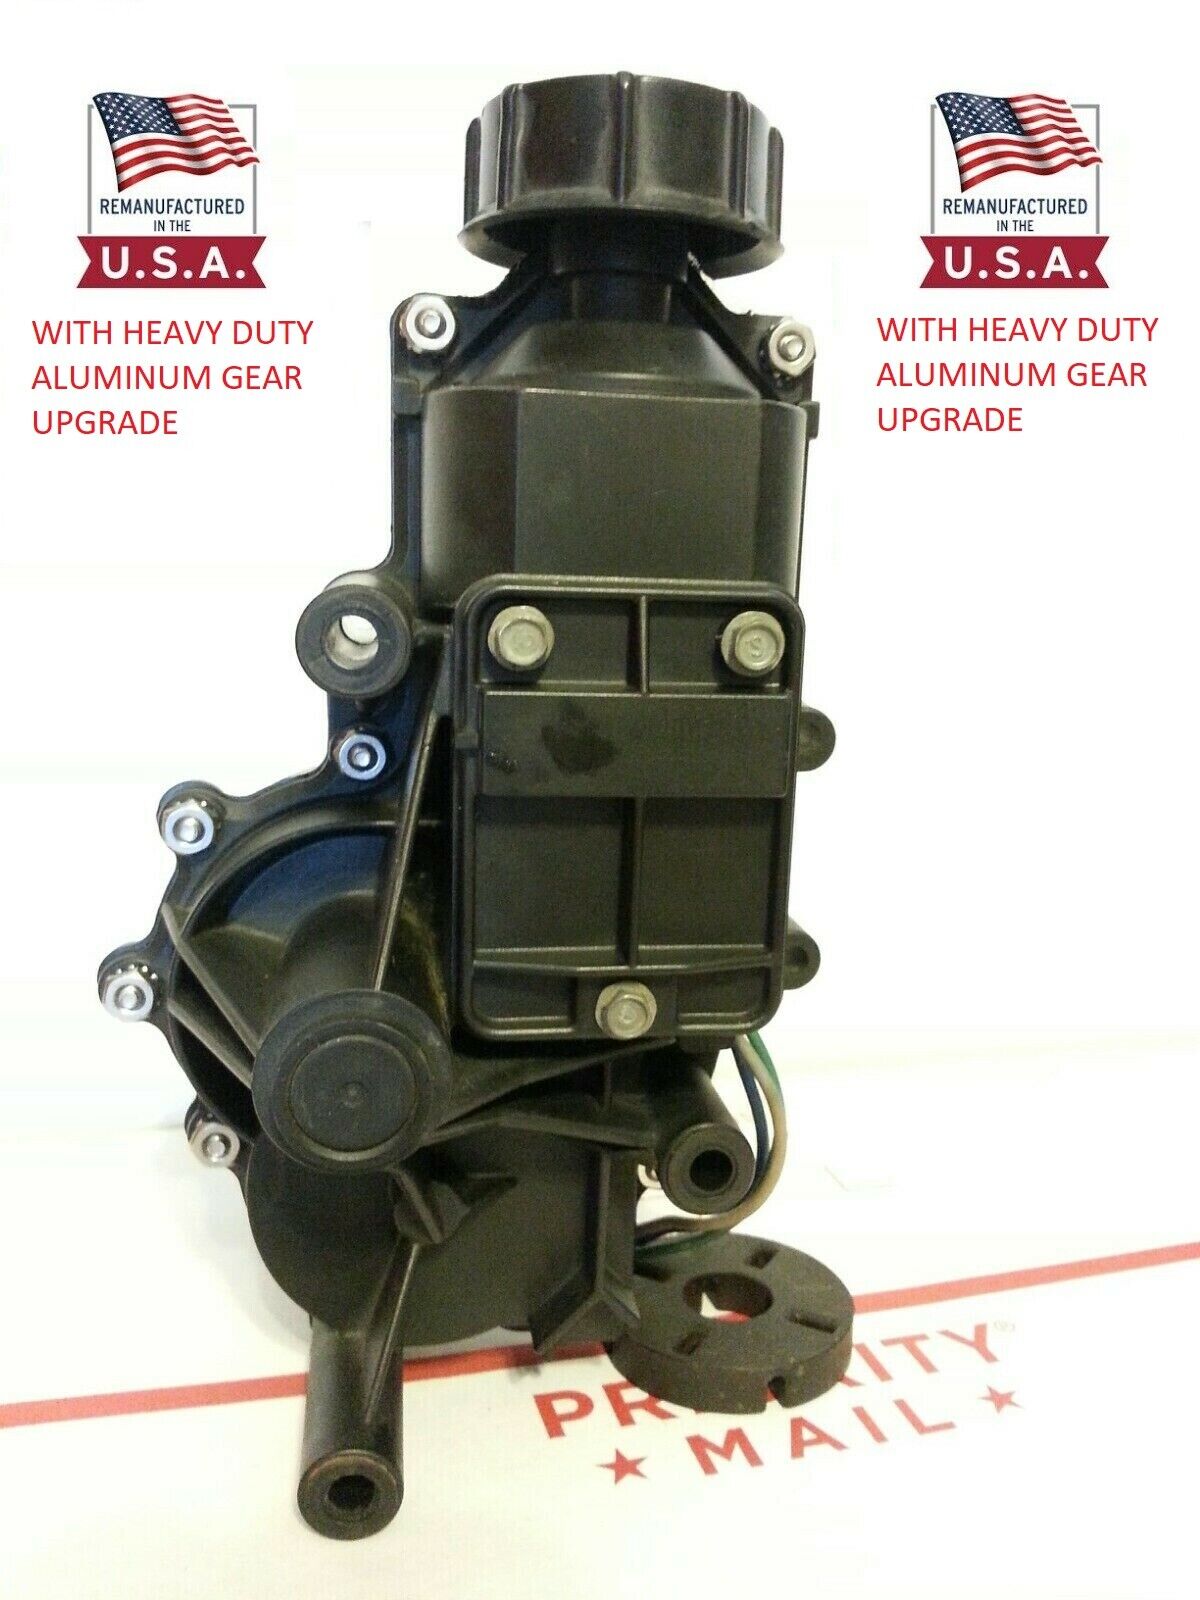 1984-1986 Fiero Reman Headlight Motor Heavy Duty Gear Left Side -$65 Core Refund